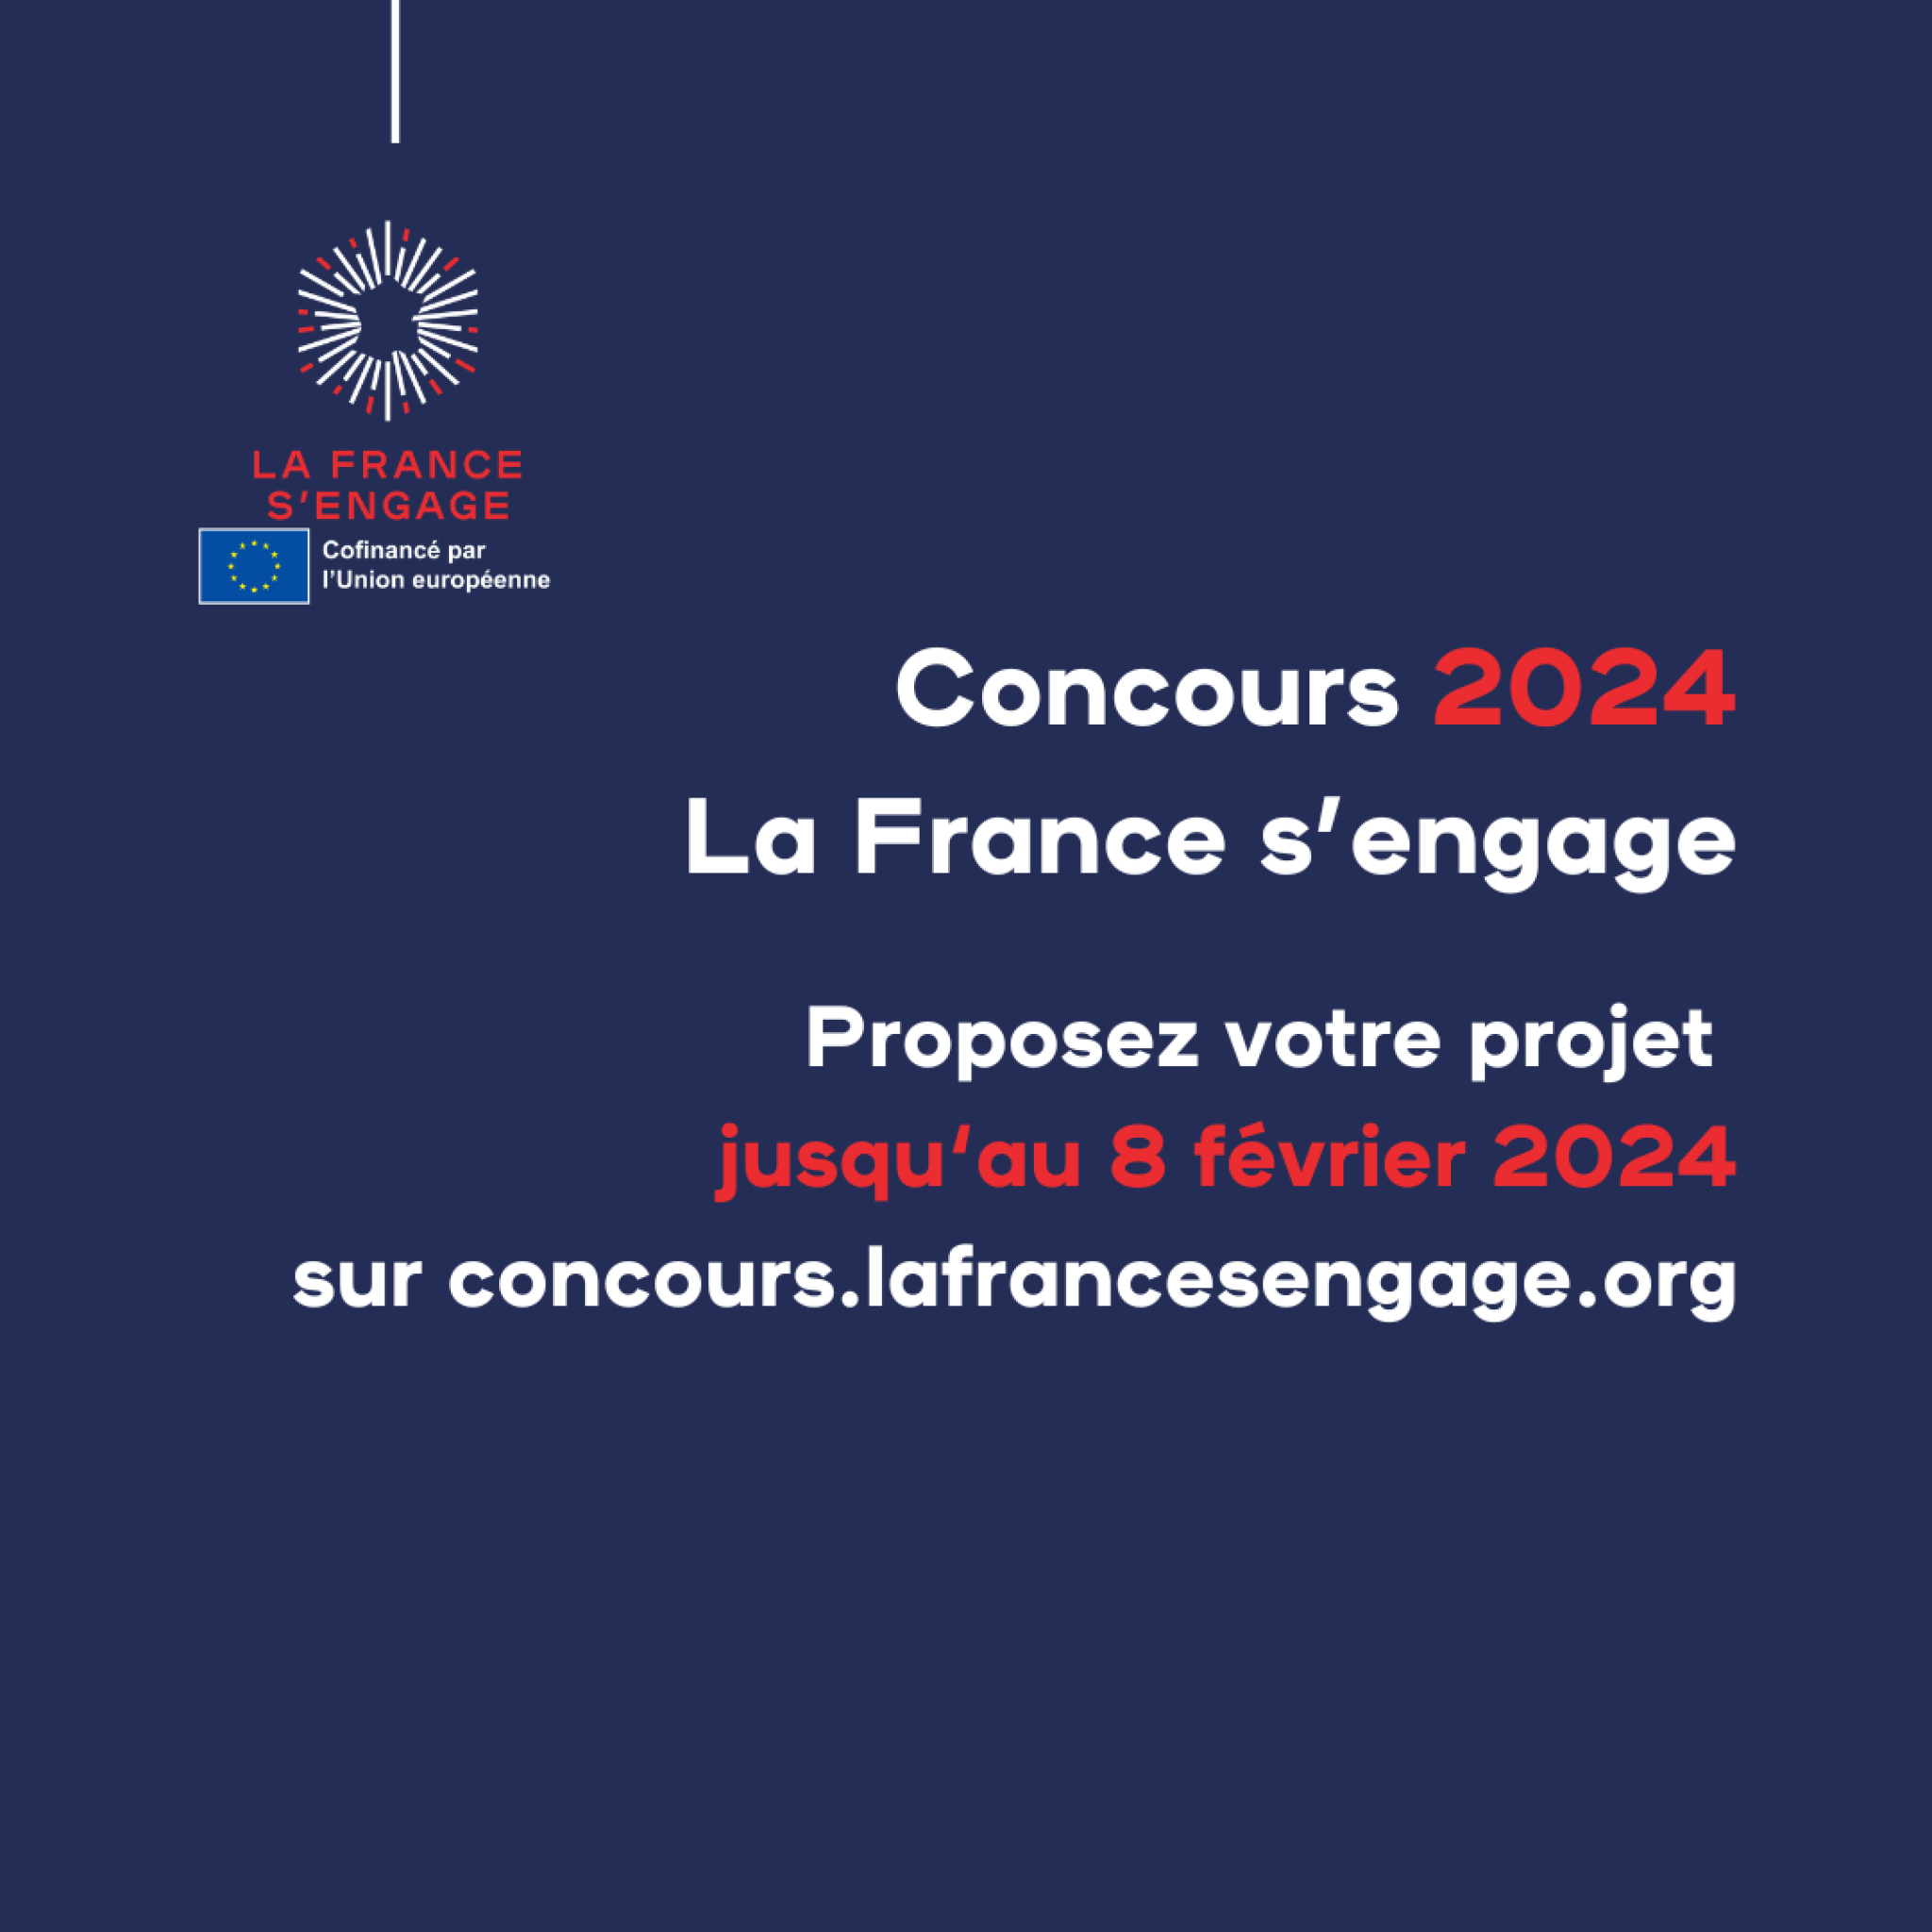 Concours 2024 - La France s'engage 